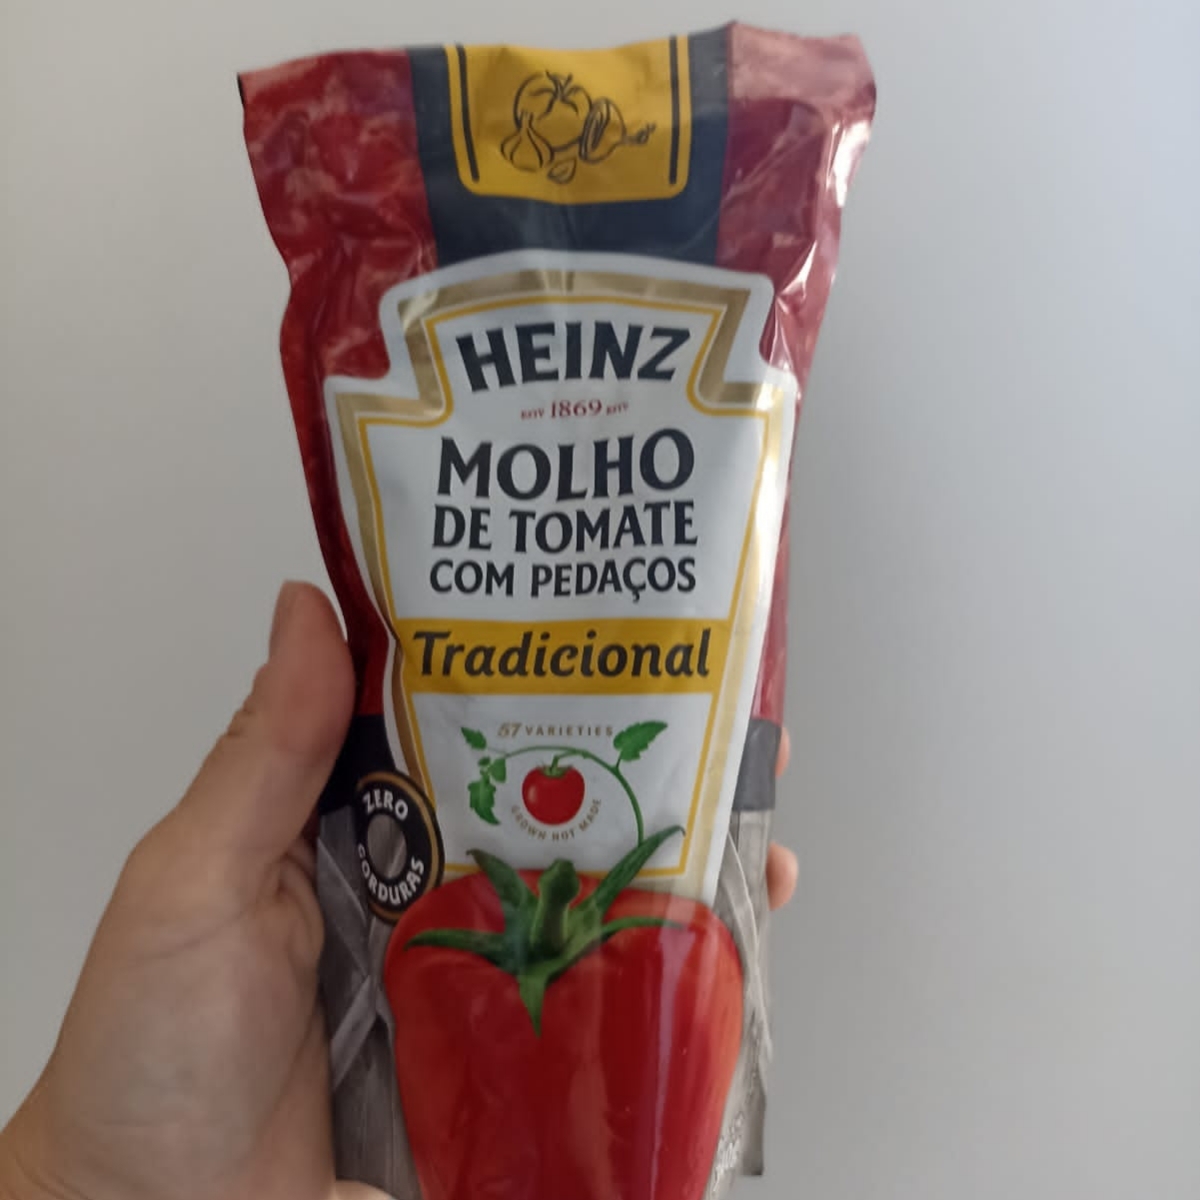 Heinz Molho de tomate com pedaços Reviews | abillion